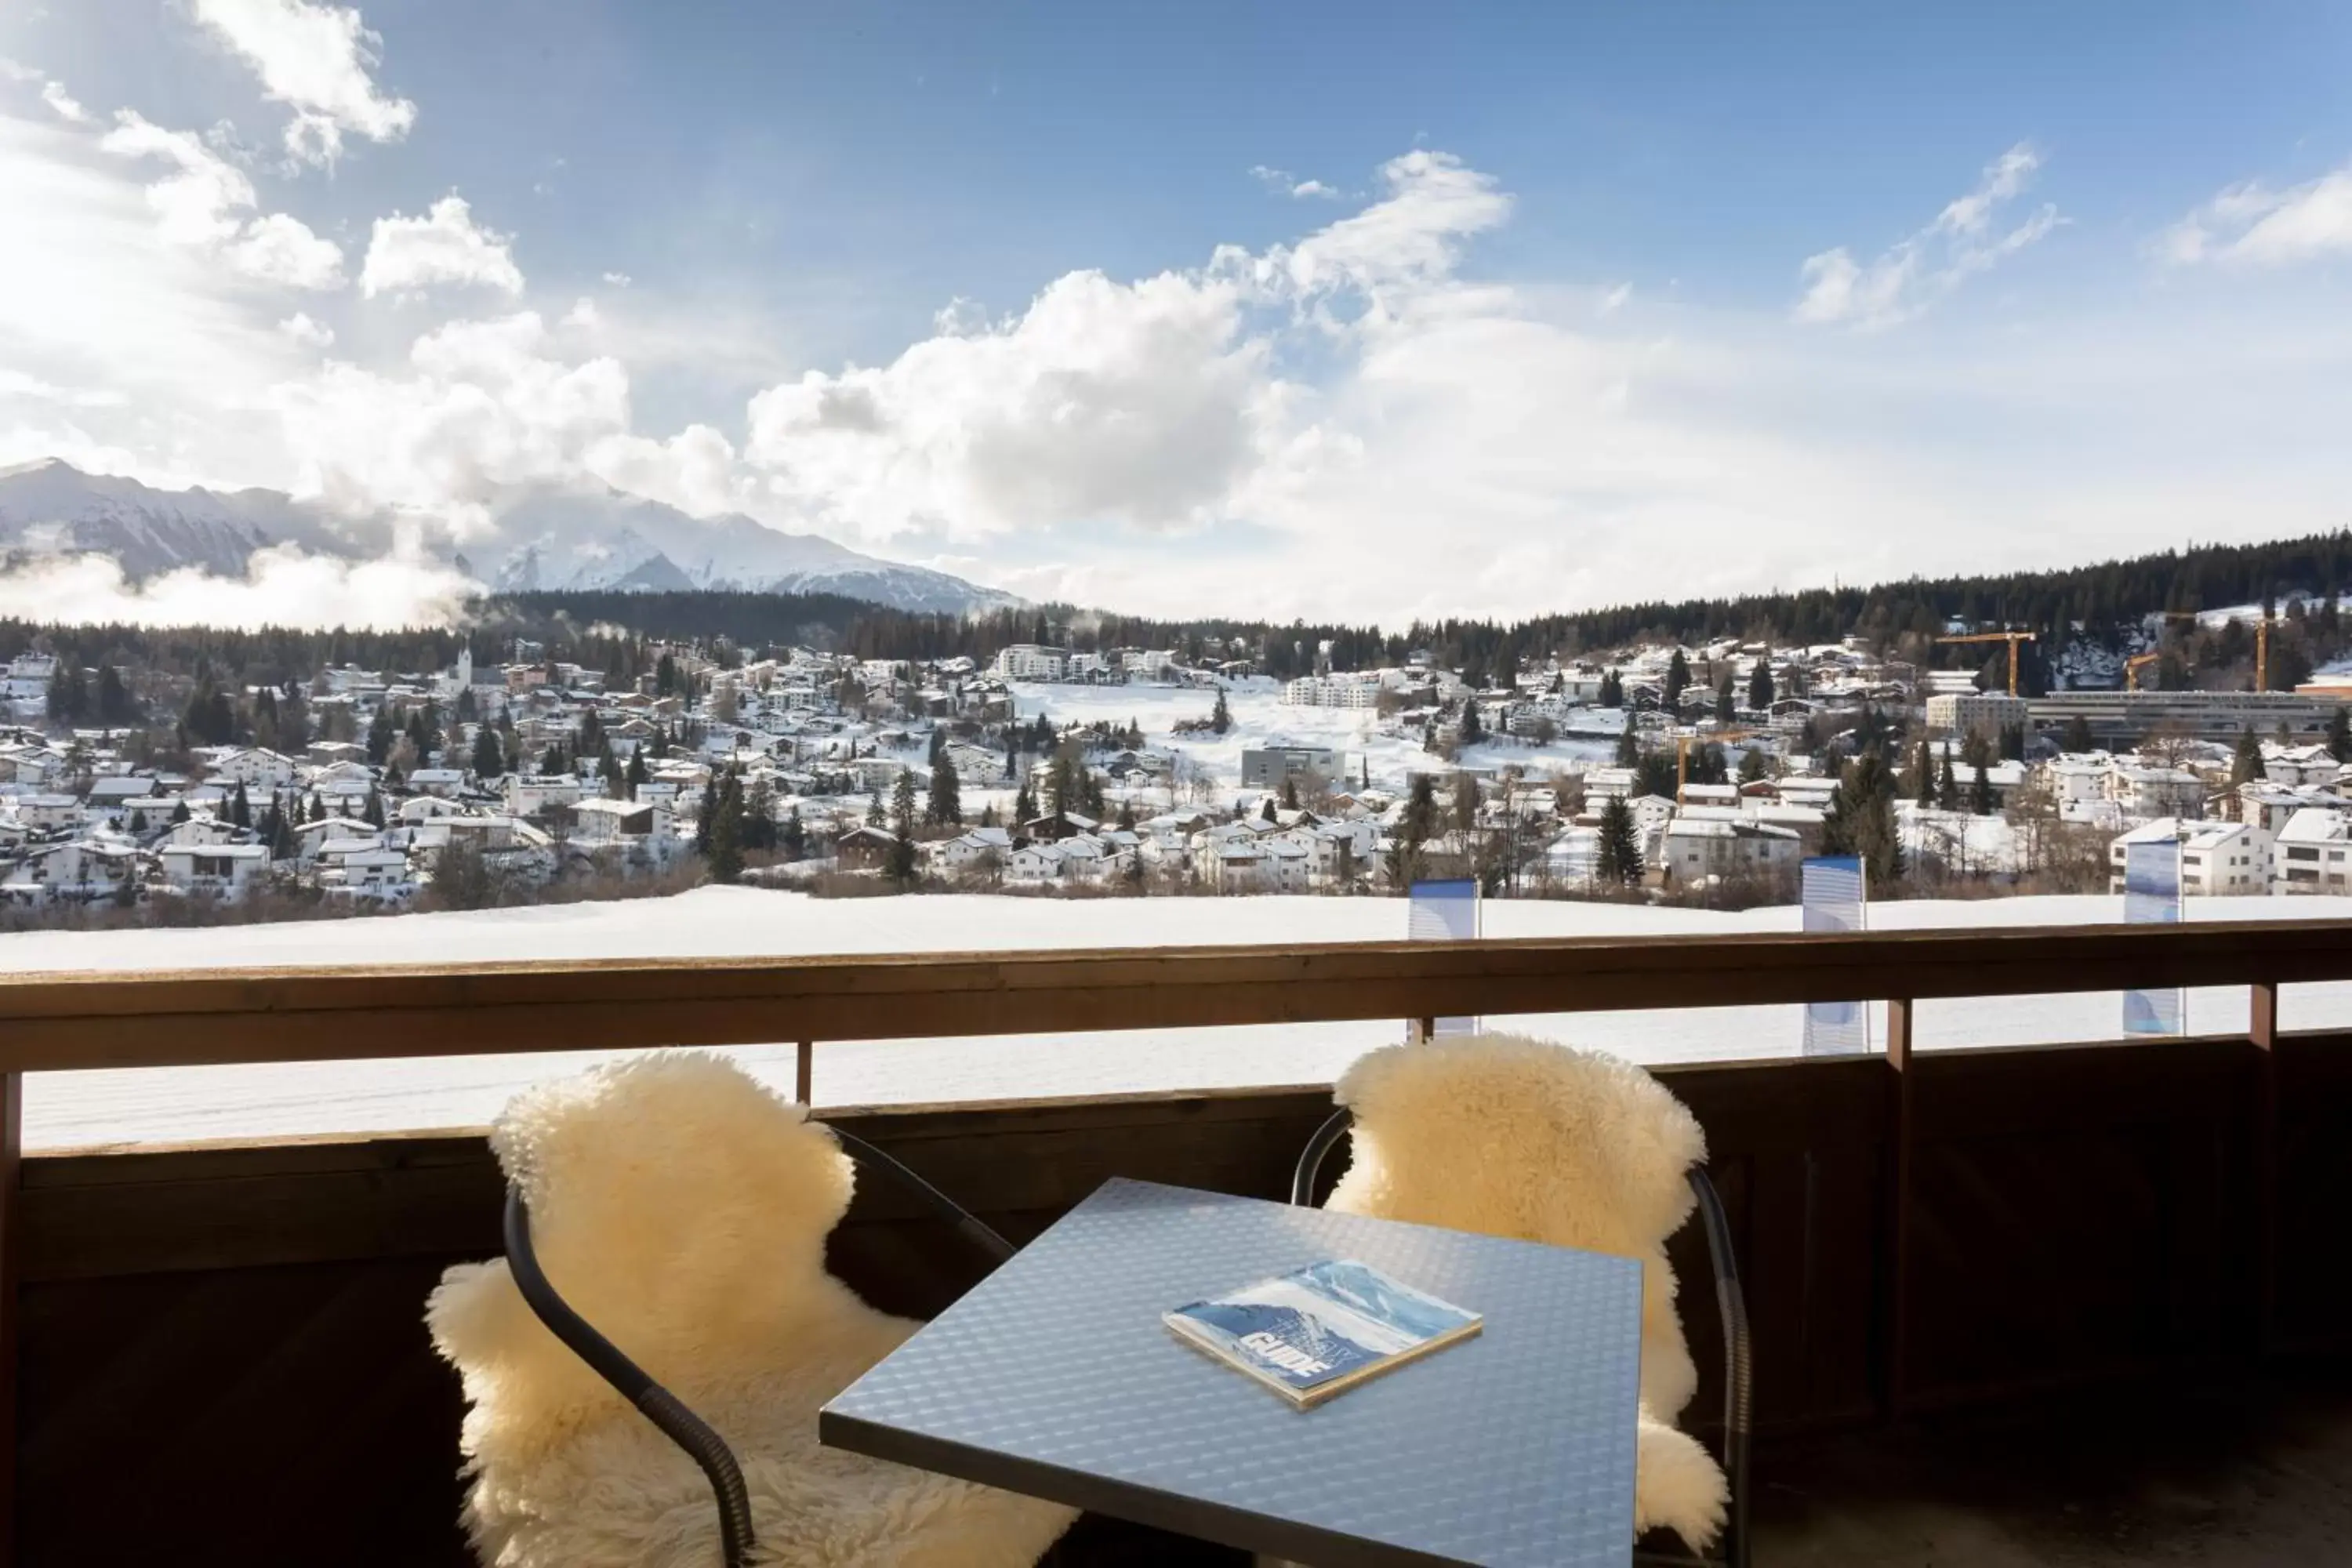 Winter in T3 Alpenhotel Flims